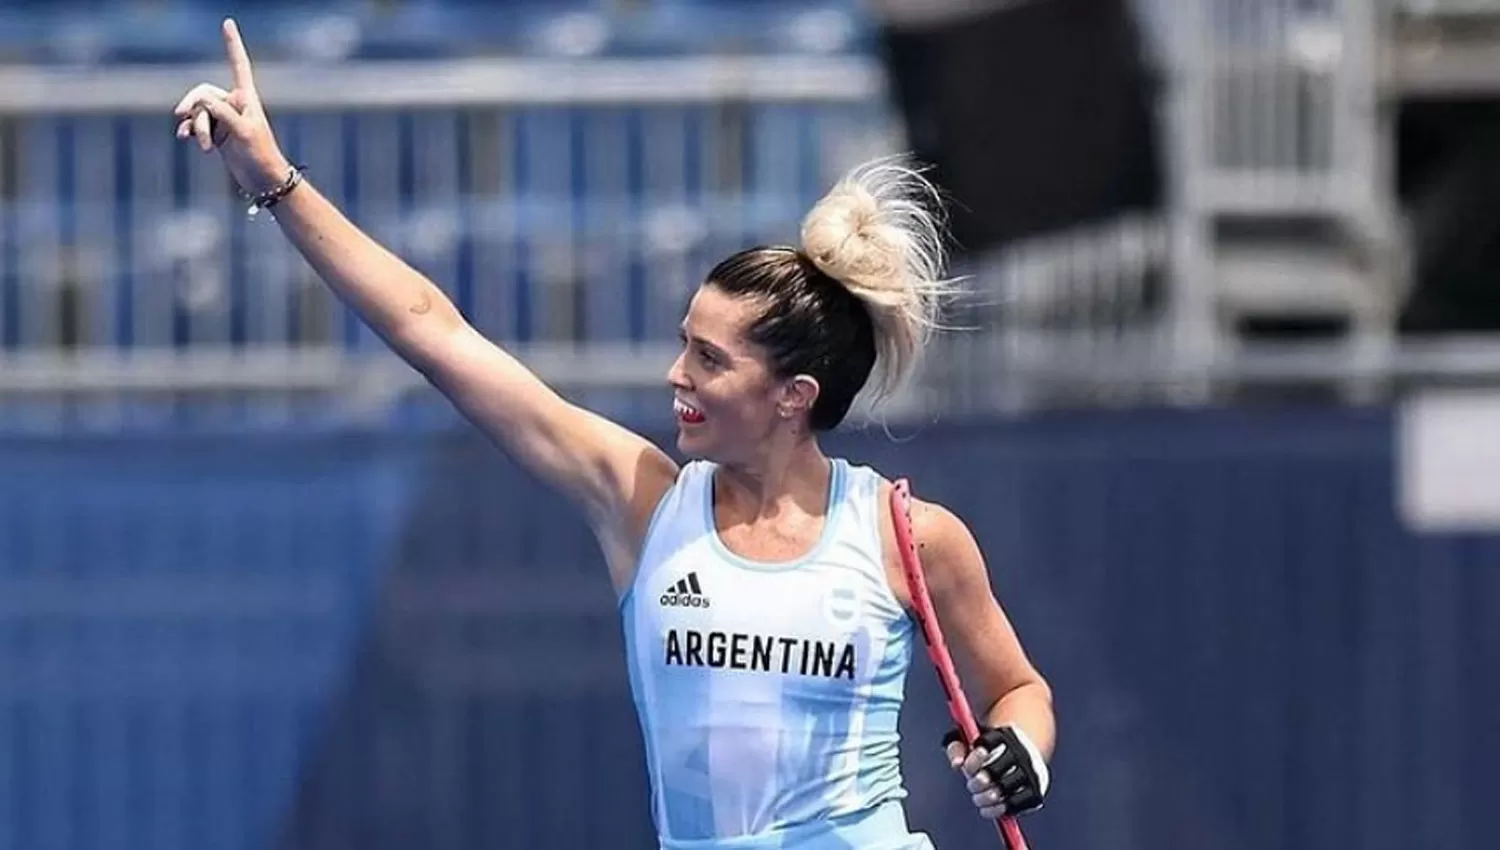 FIGURA. Albertario integró el equipo argentino que consiguió la plata en Tokio 2020.